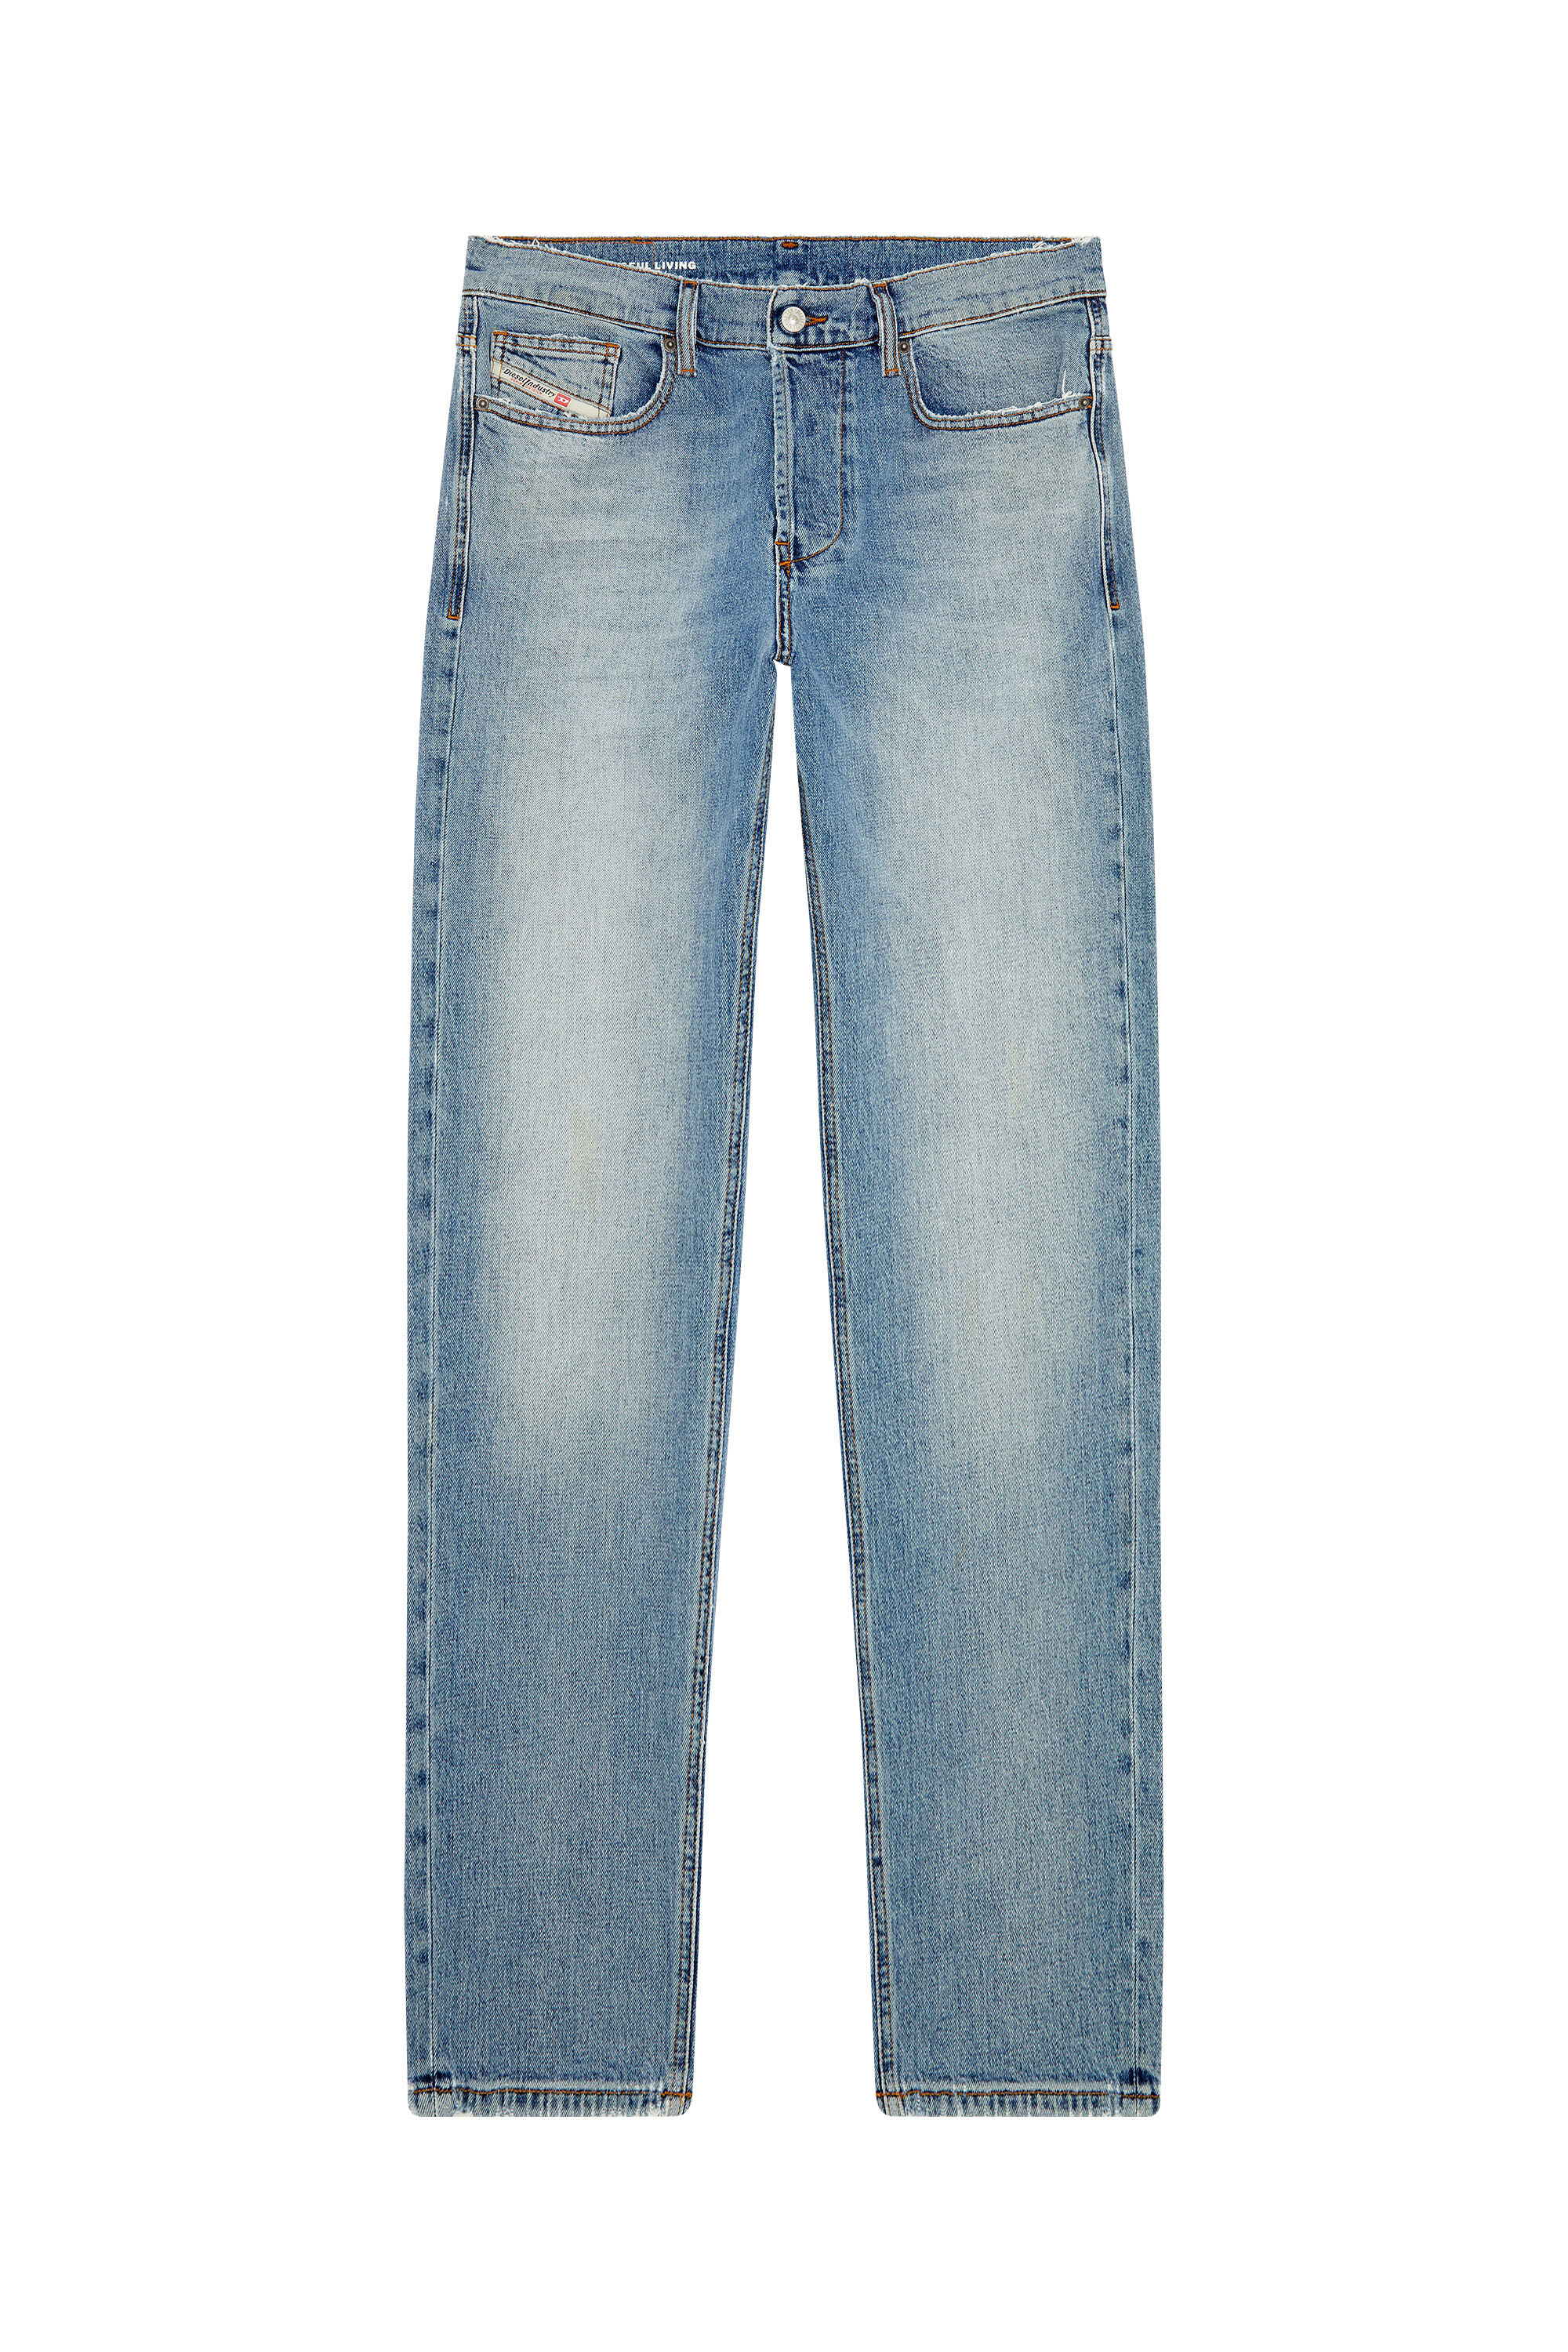 Men's Oversized Straight Jeans | Light blue | Diesel 2010 D-Macs